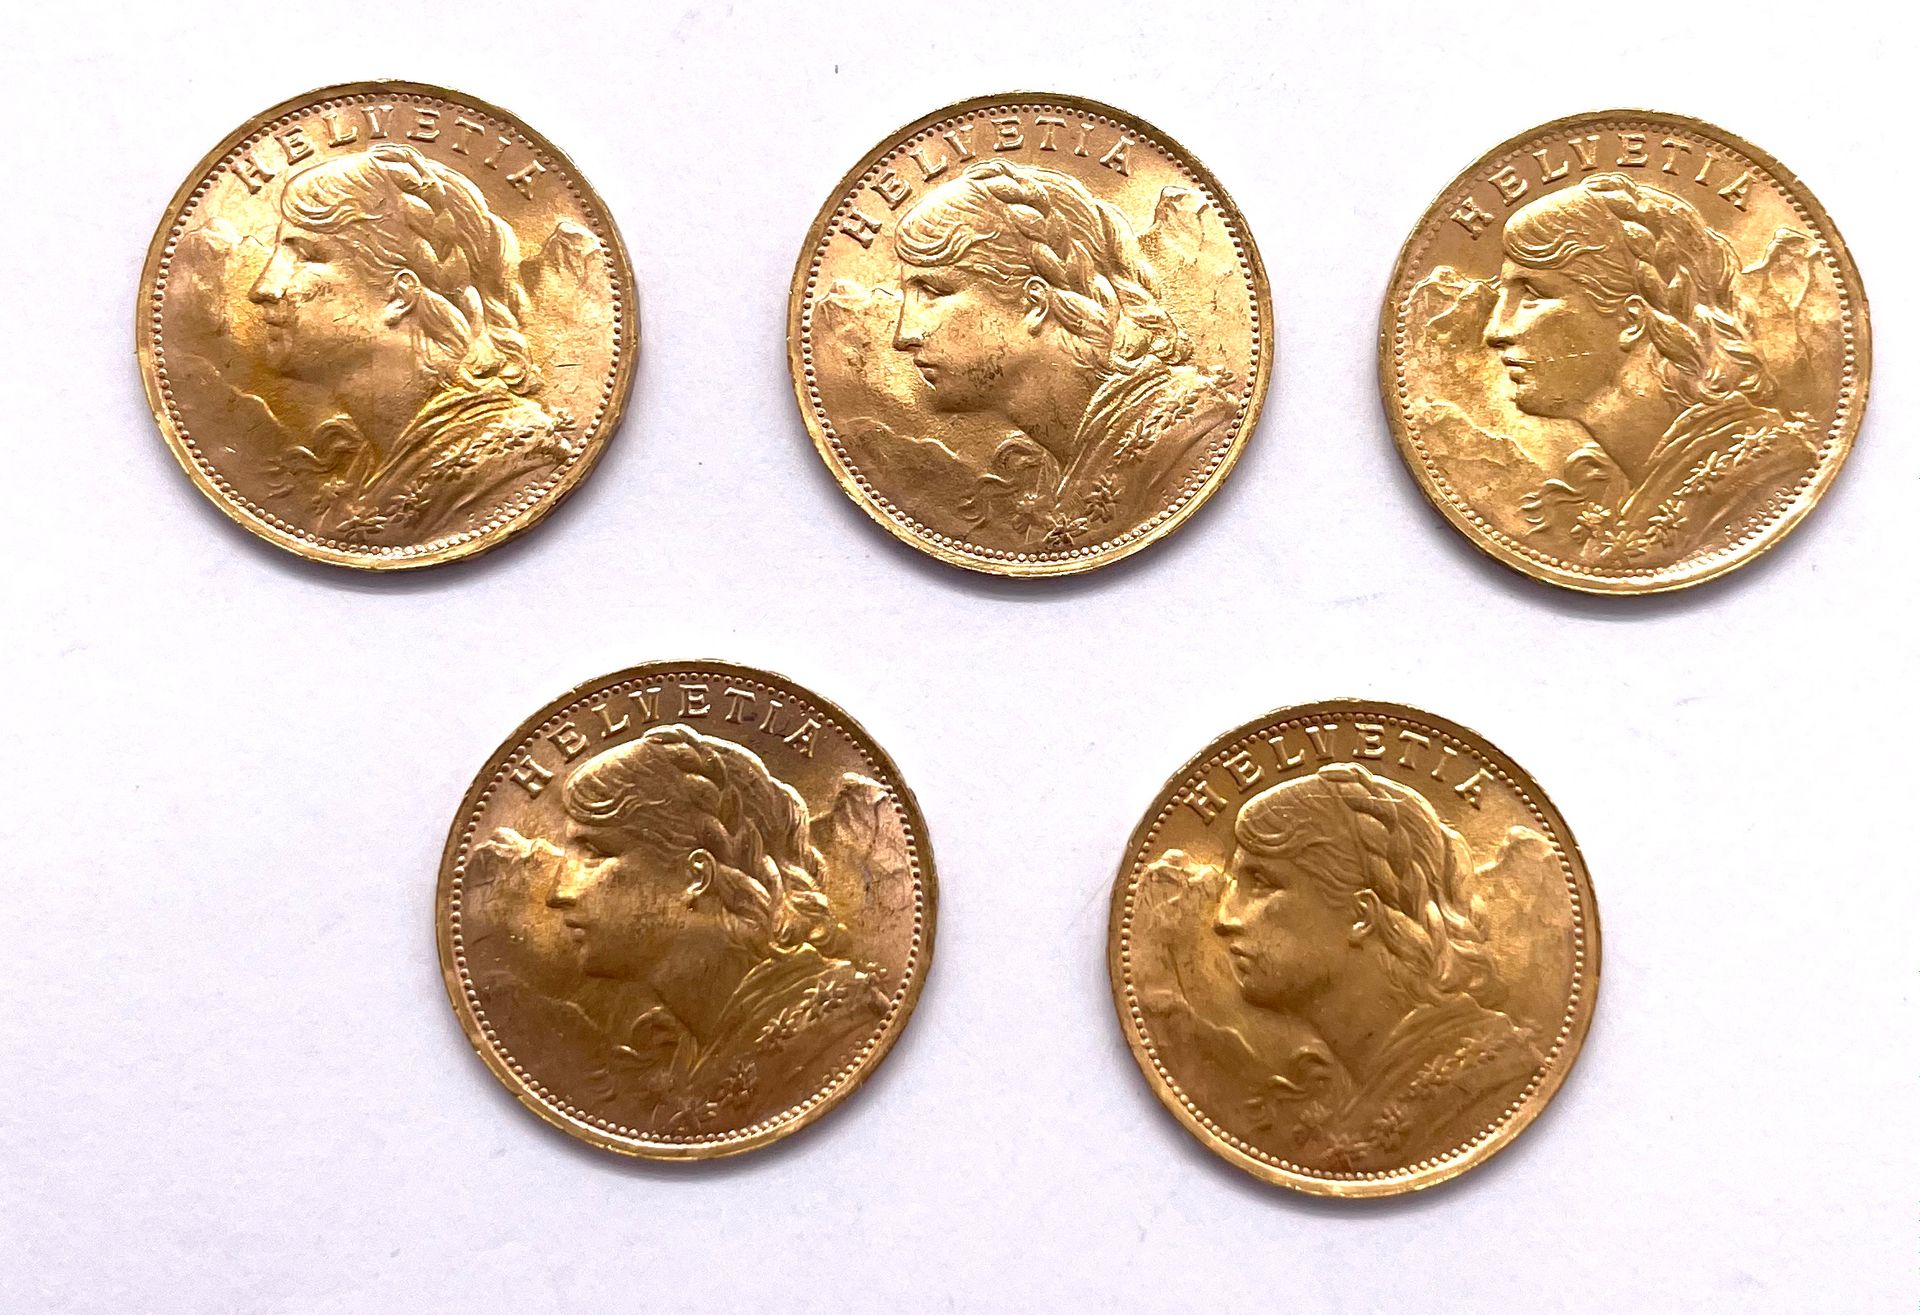 Null 亥尔维提

五枚20法郎硬币拍品

A: 高山丘陵前的Helvetia

R: 海尔维德生态

材质 : 金900/1000

重量 : 32,25 &hellip;